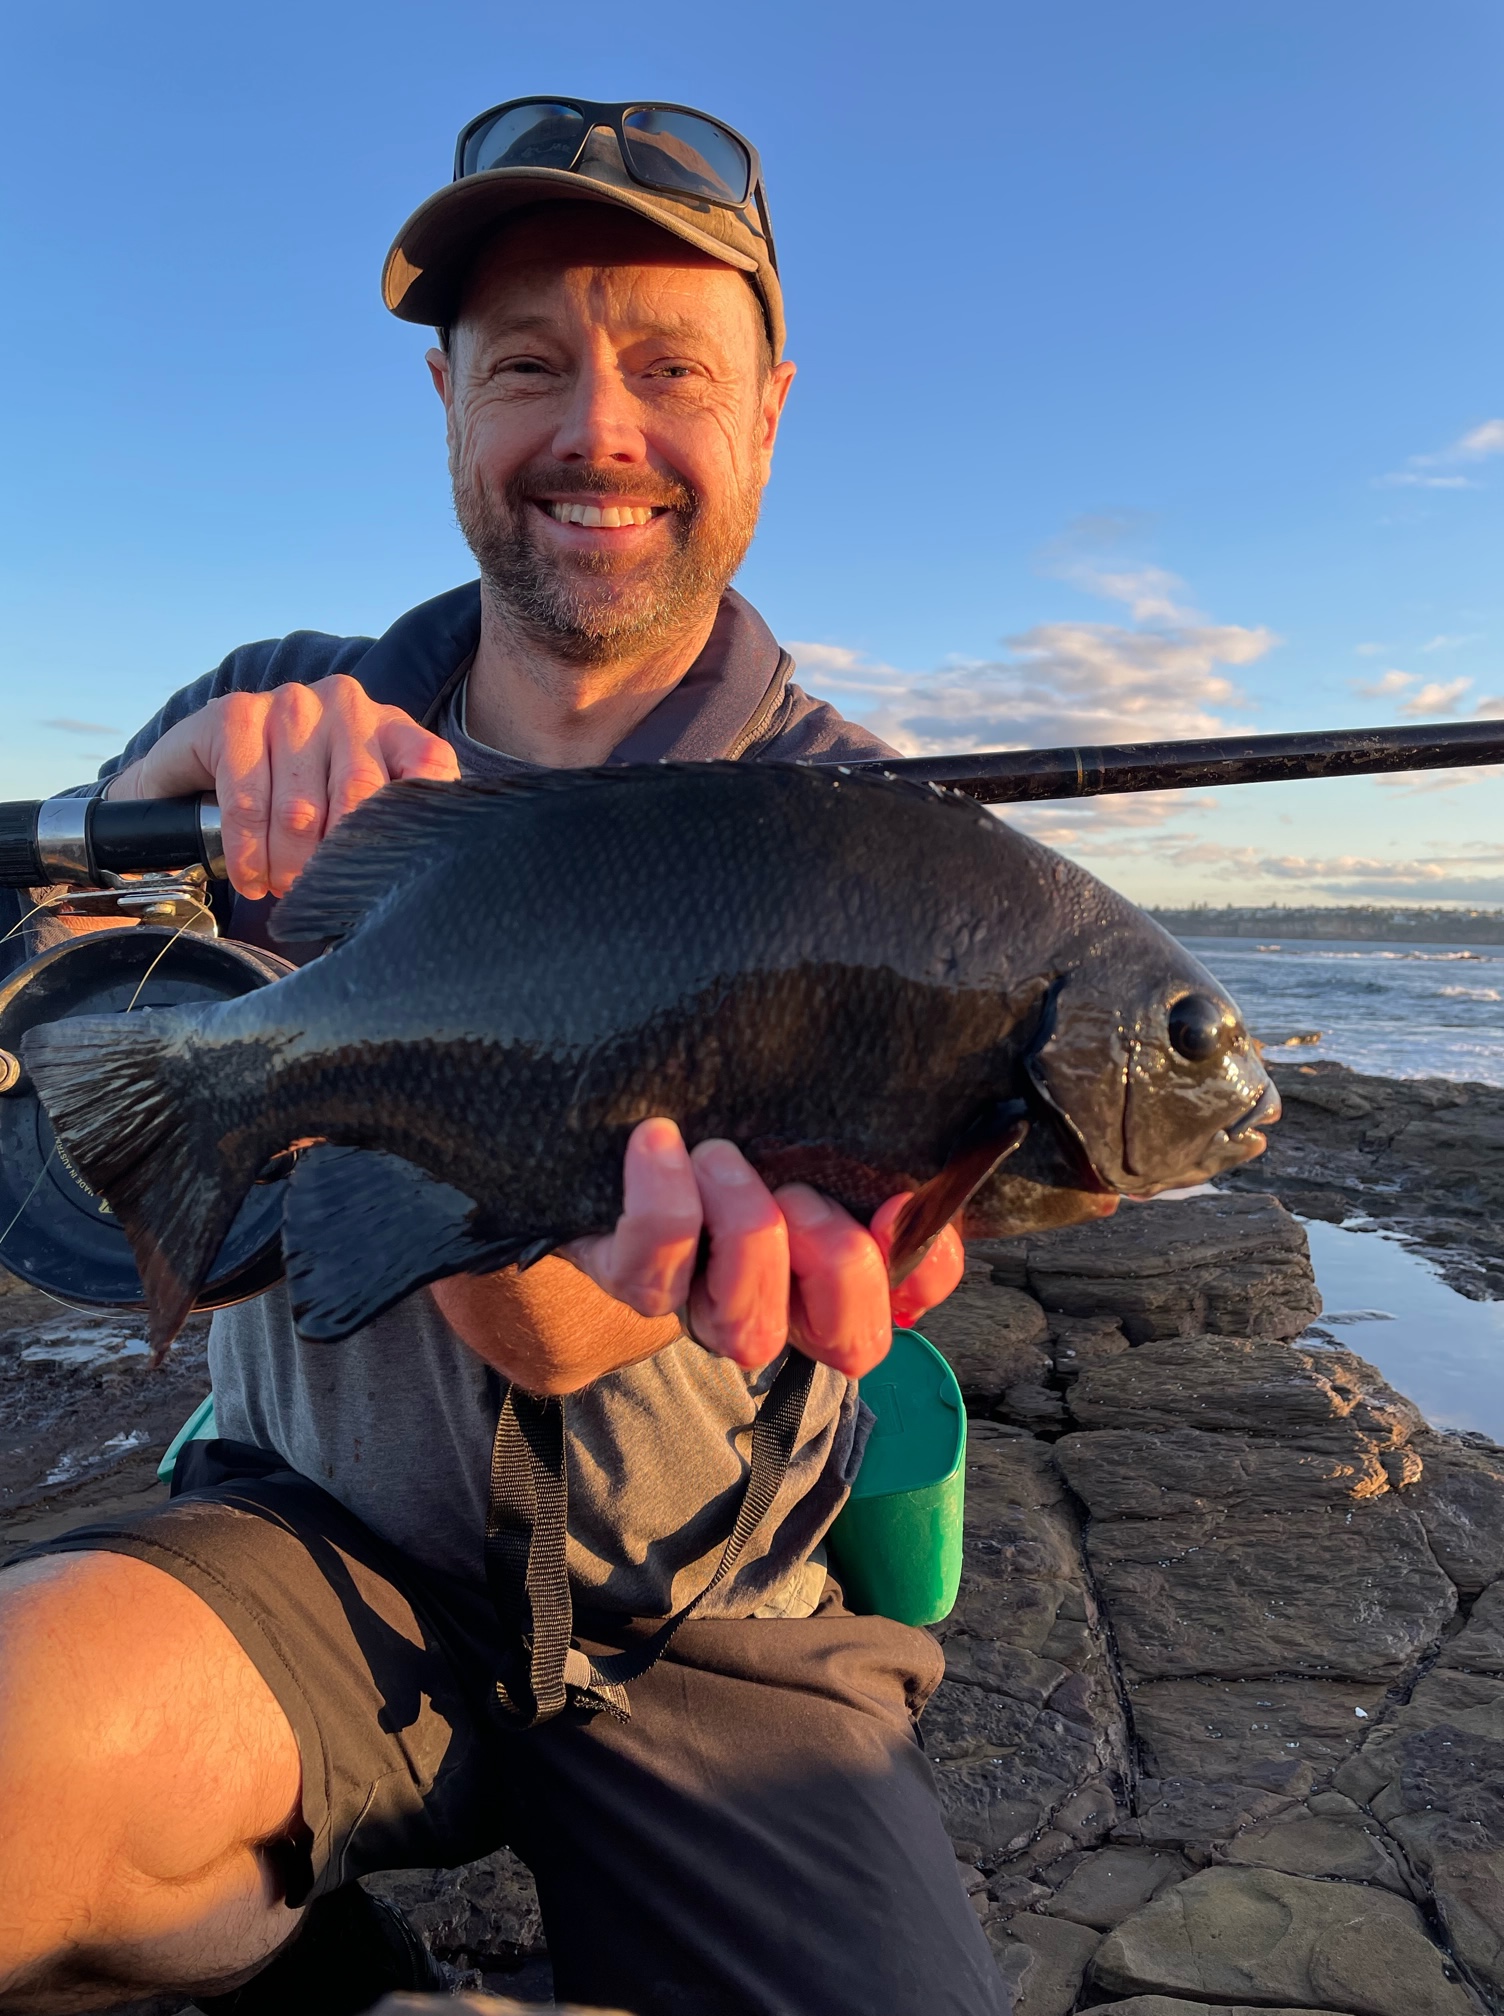 Rock blackfish (drummer) caught on prawn bait